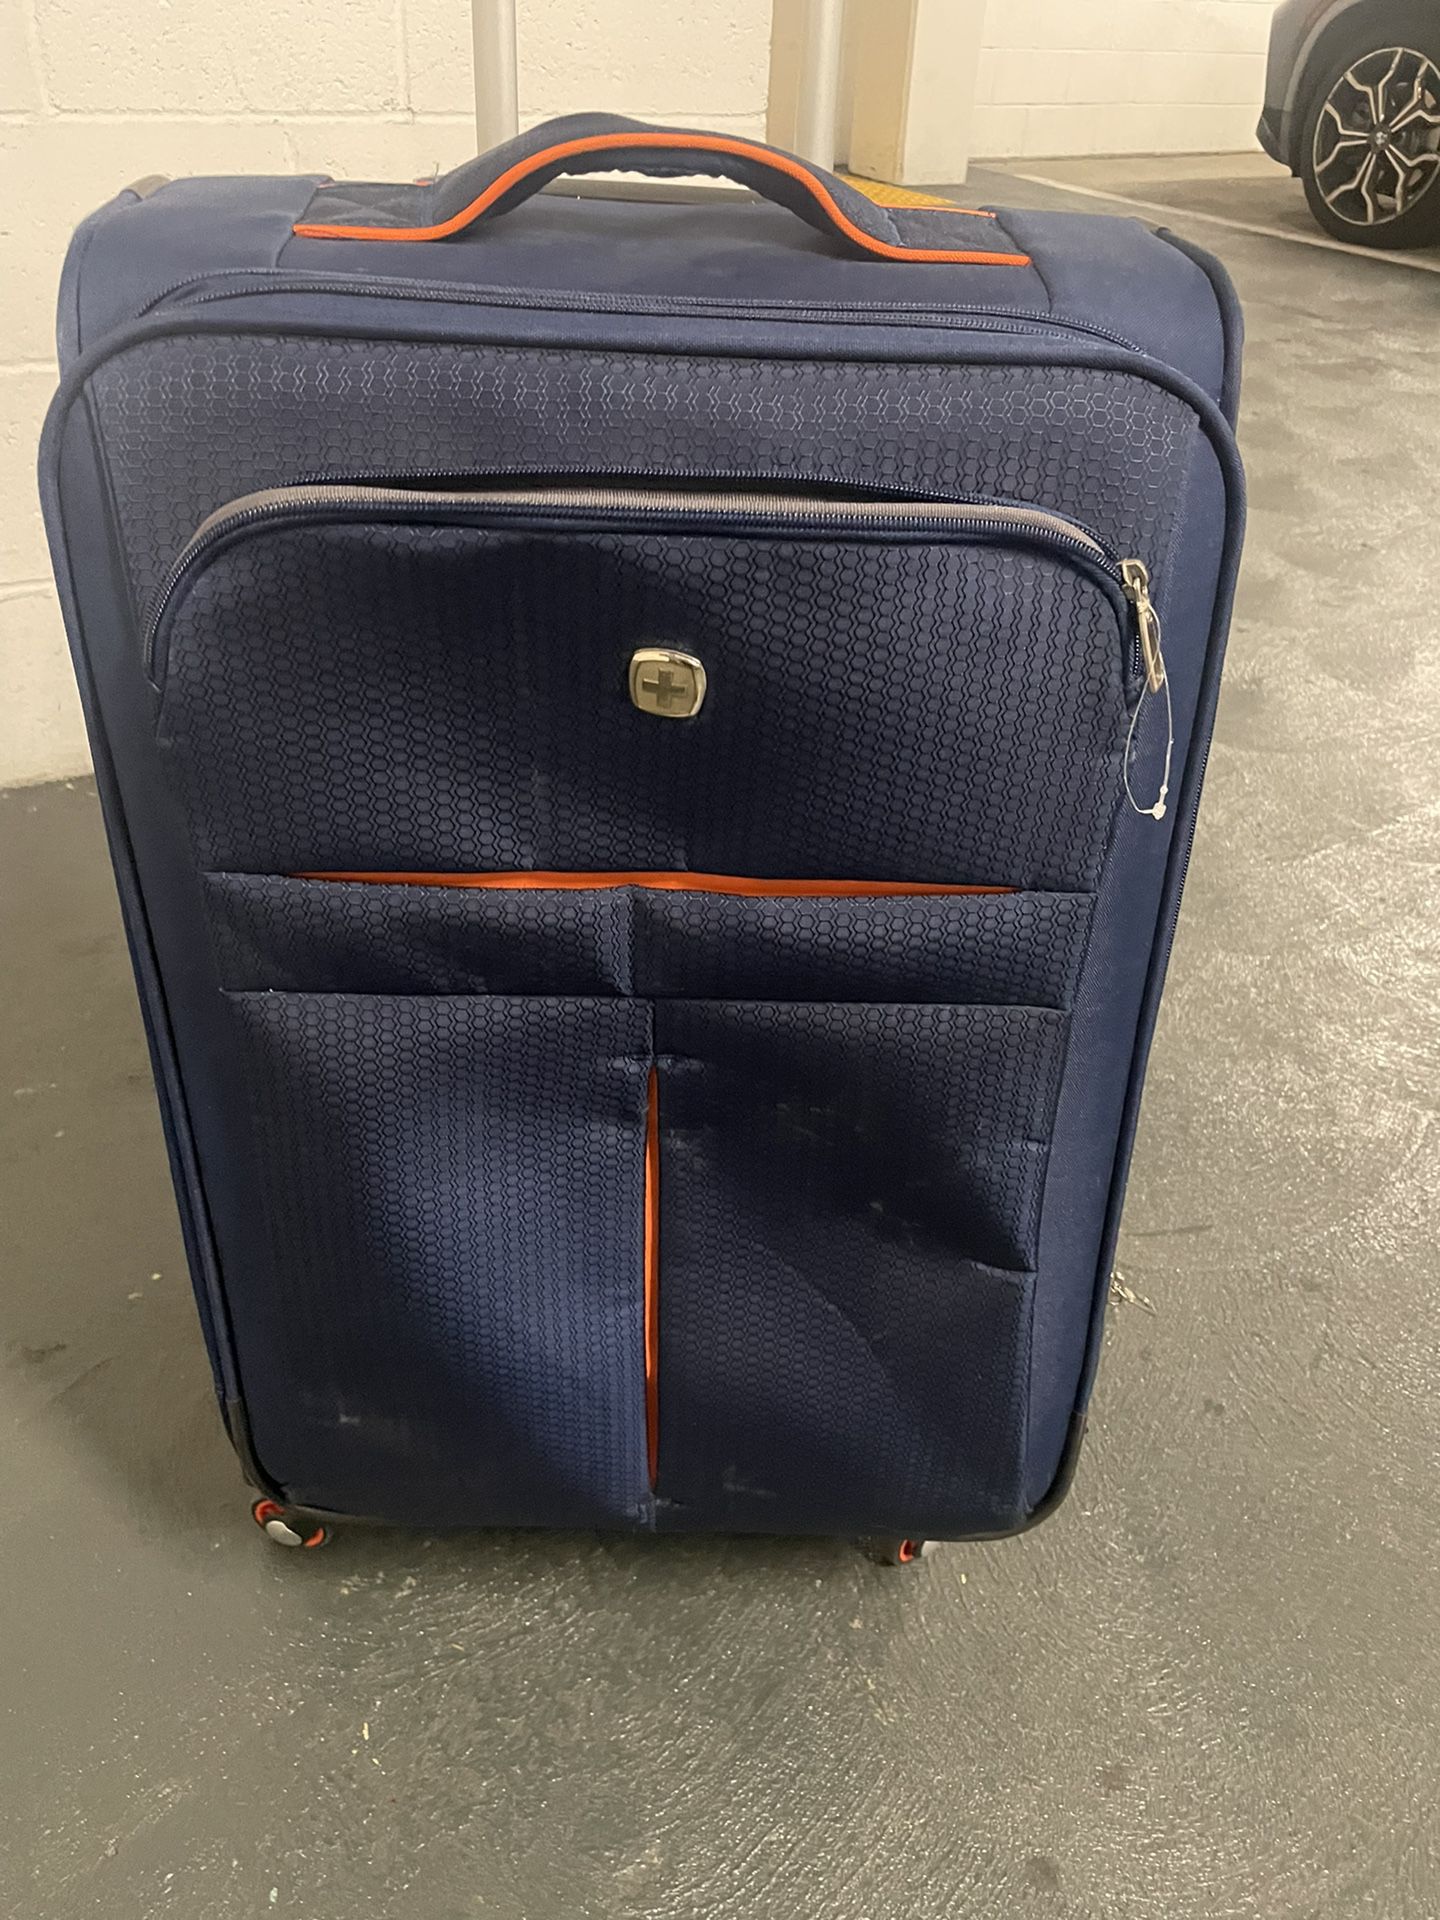 Swiss Gear Luggage 24x16x10  Like New.  Tags Still On 